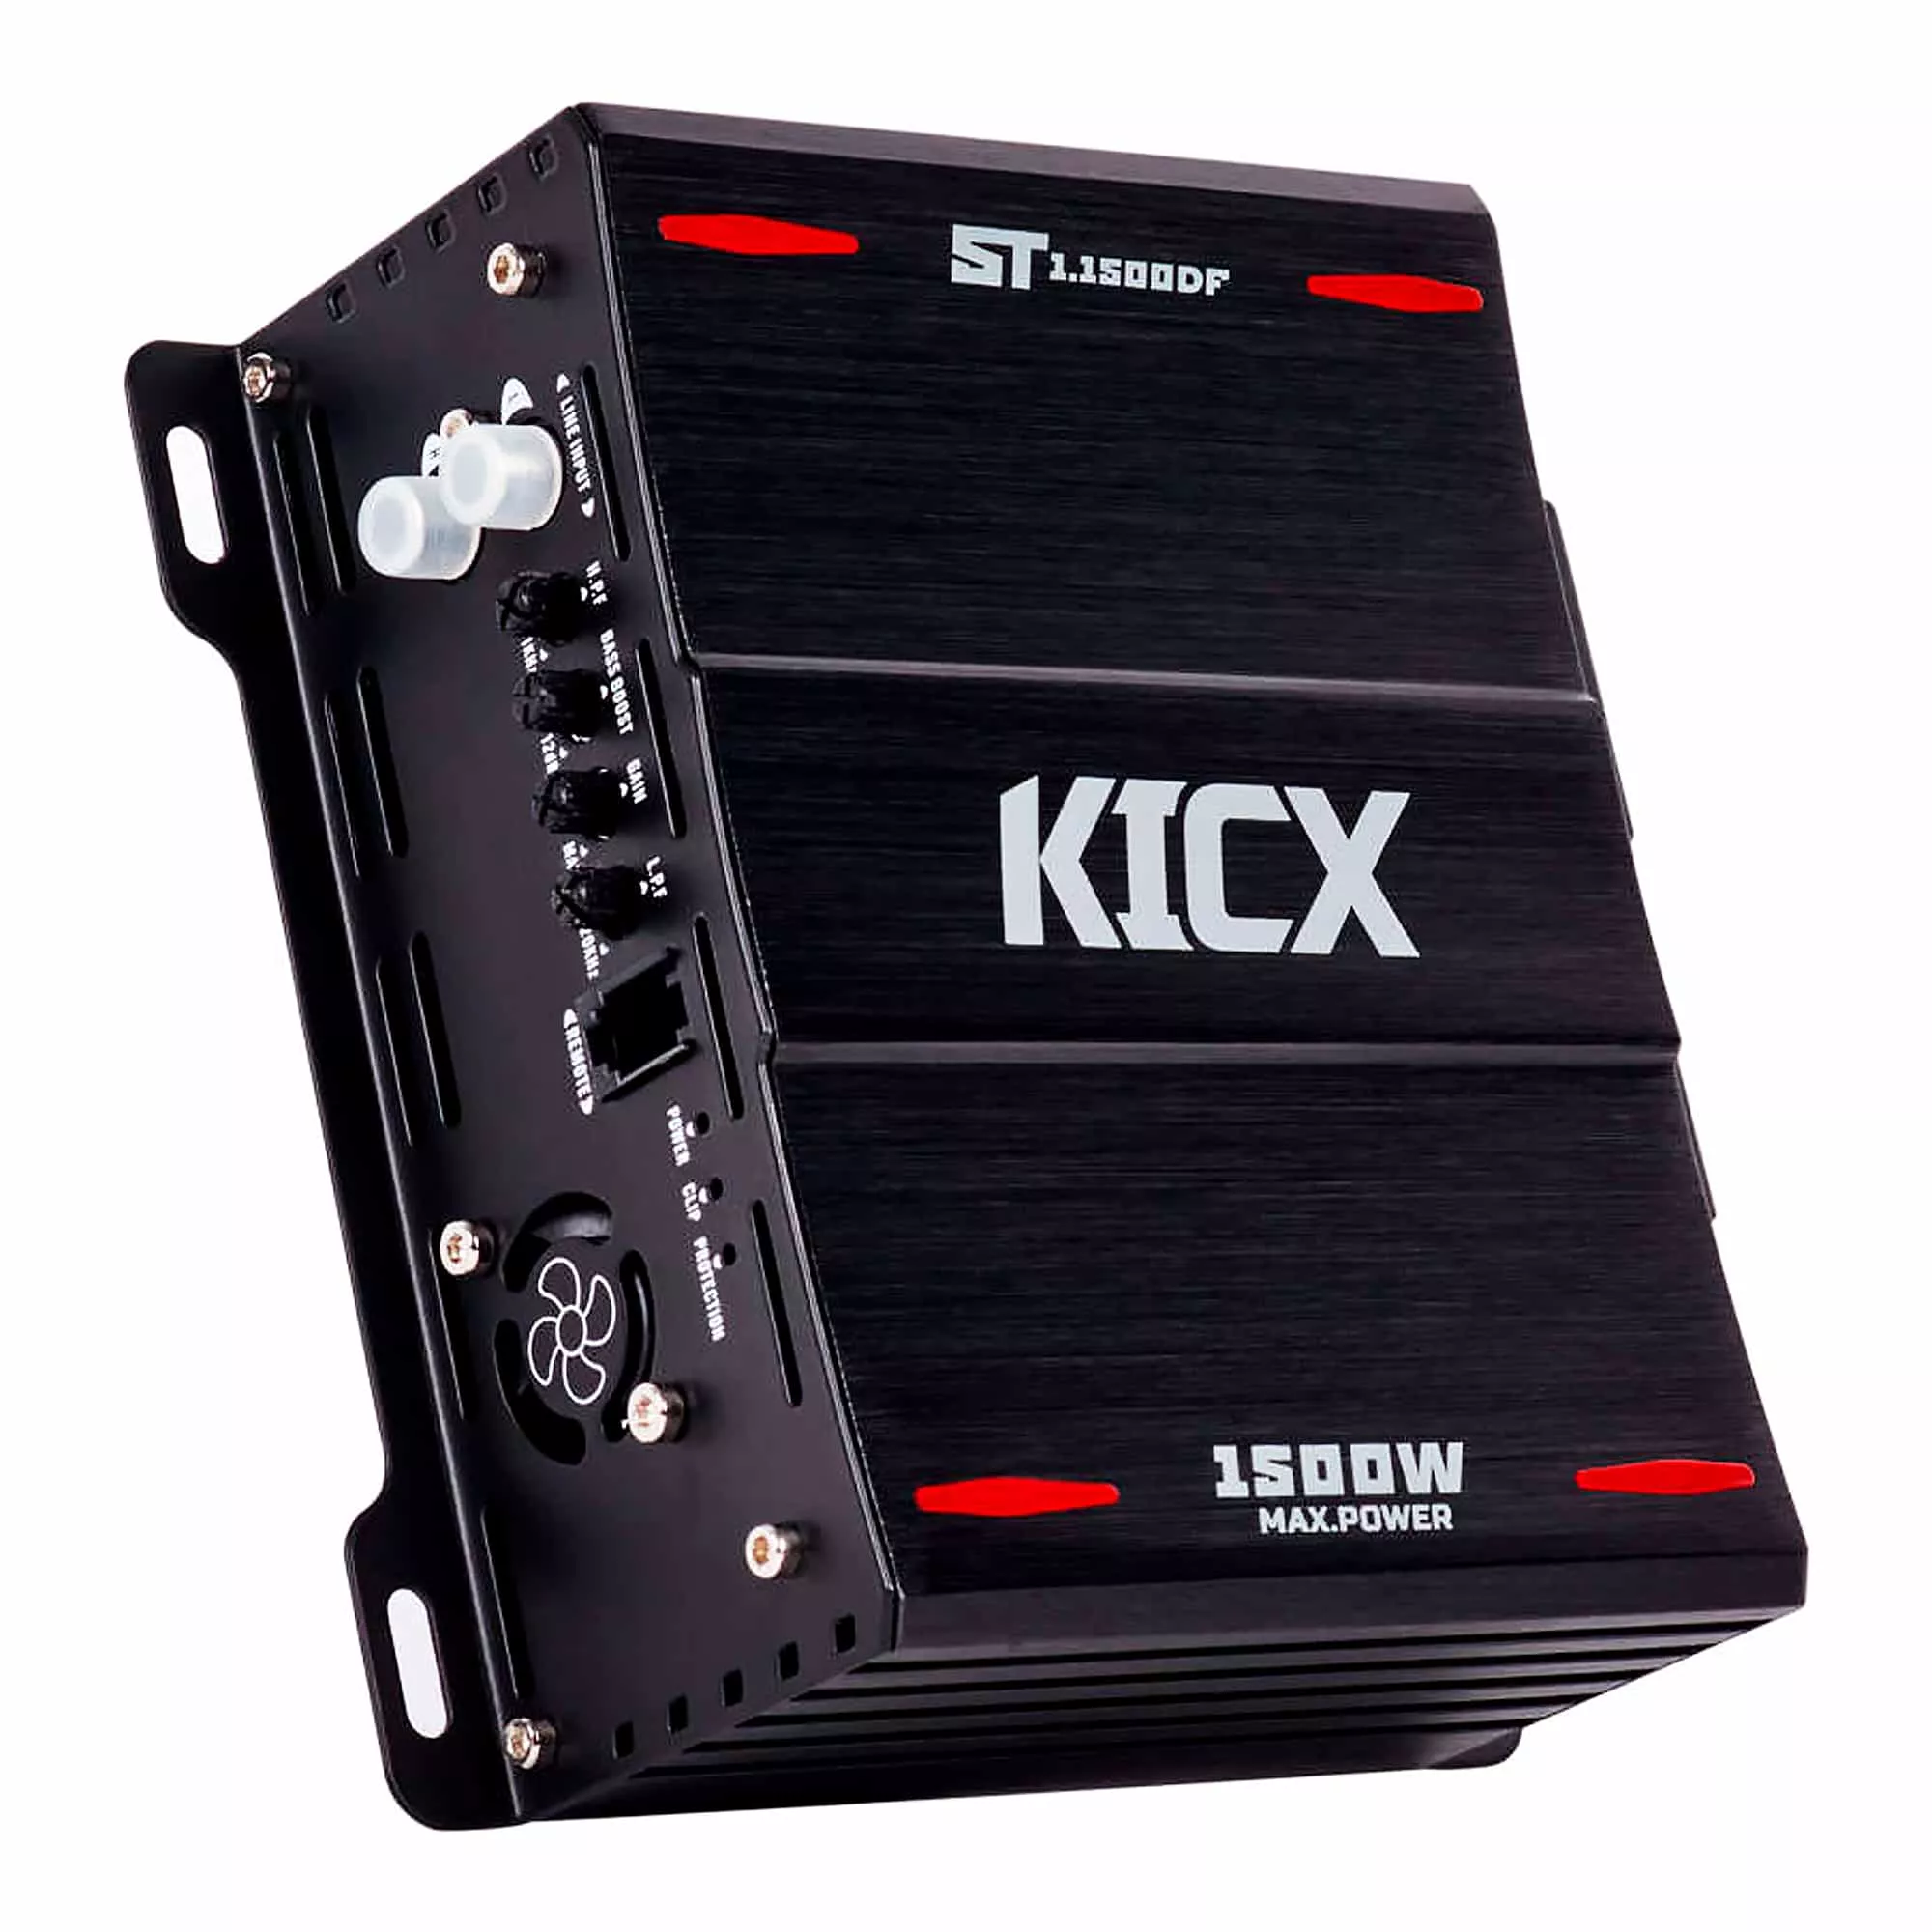 Усилитель Kicx ST 1.1500DF (4276)